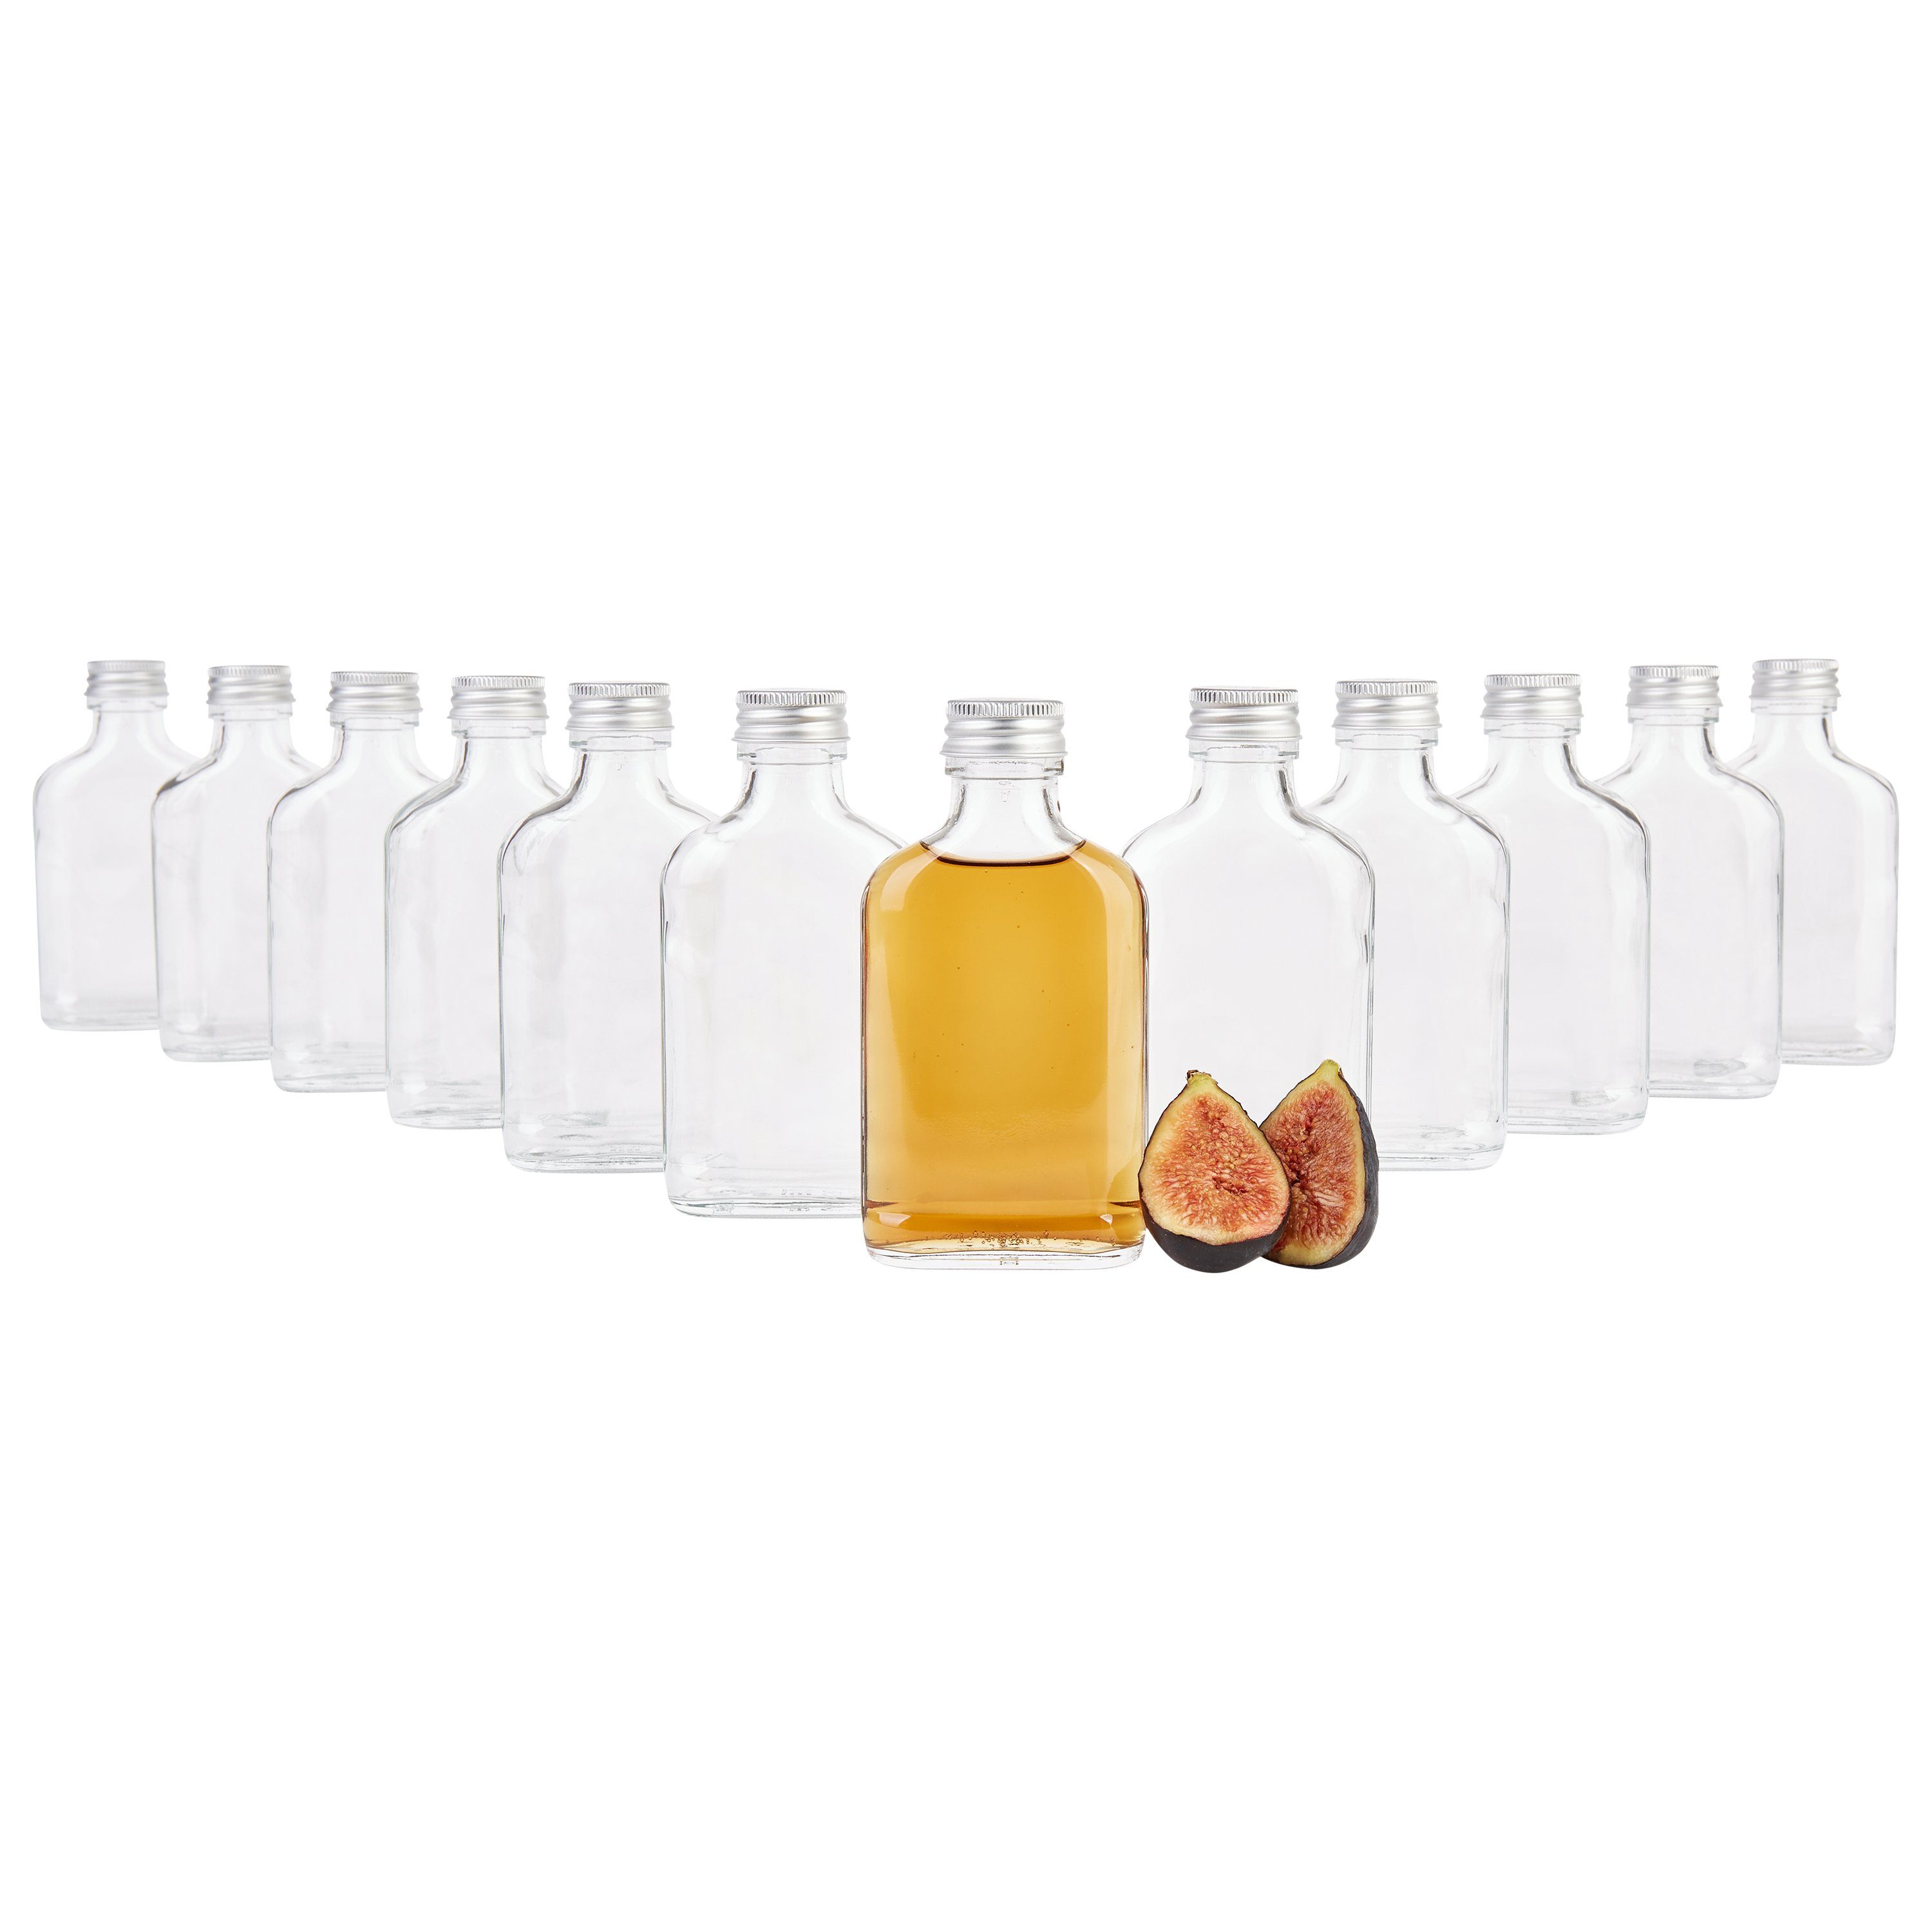 MamboCat Einmachglas 12er Set Taschenflasche 100 ml incl. Deckel PP 28 Silber Aluminium, Glas